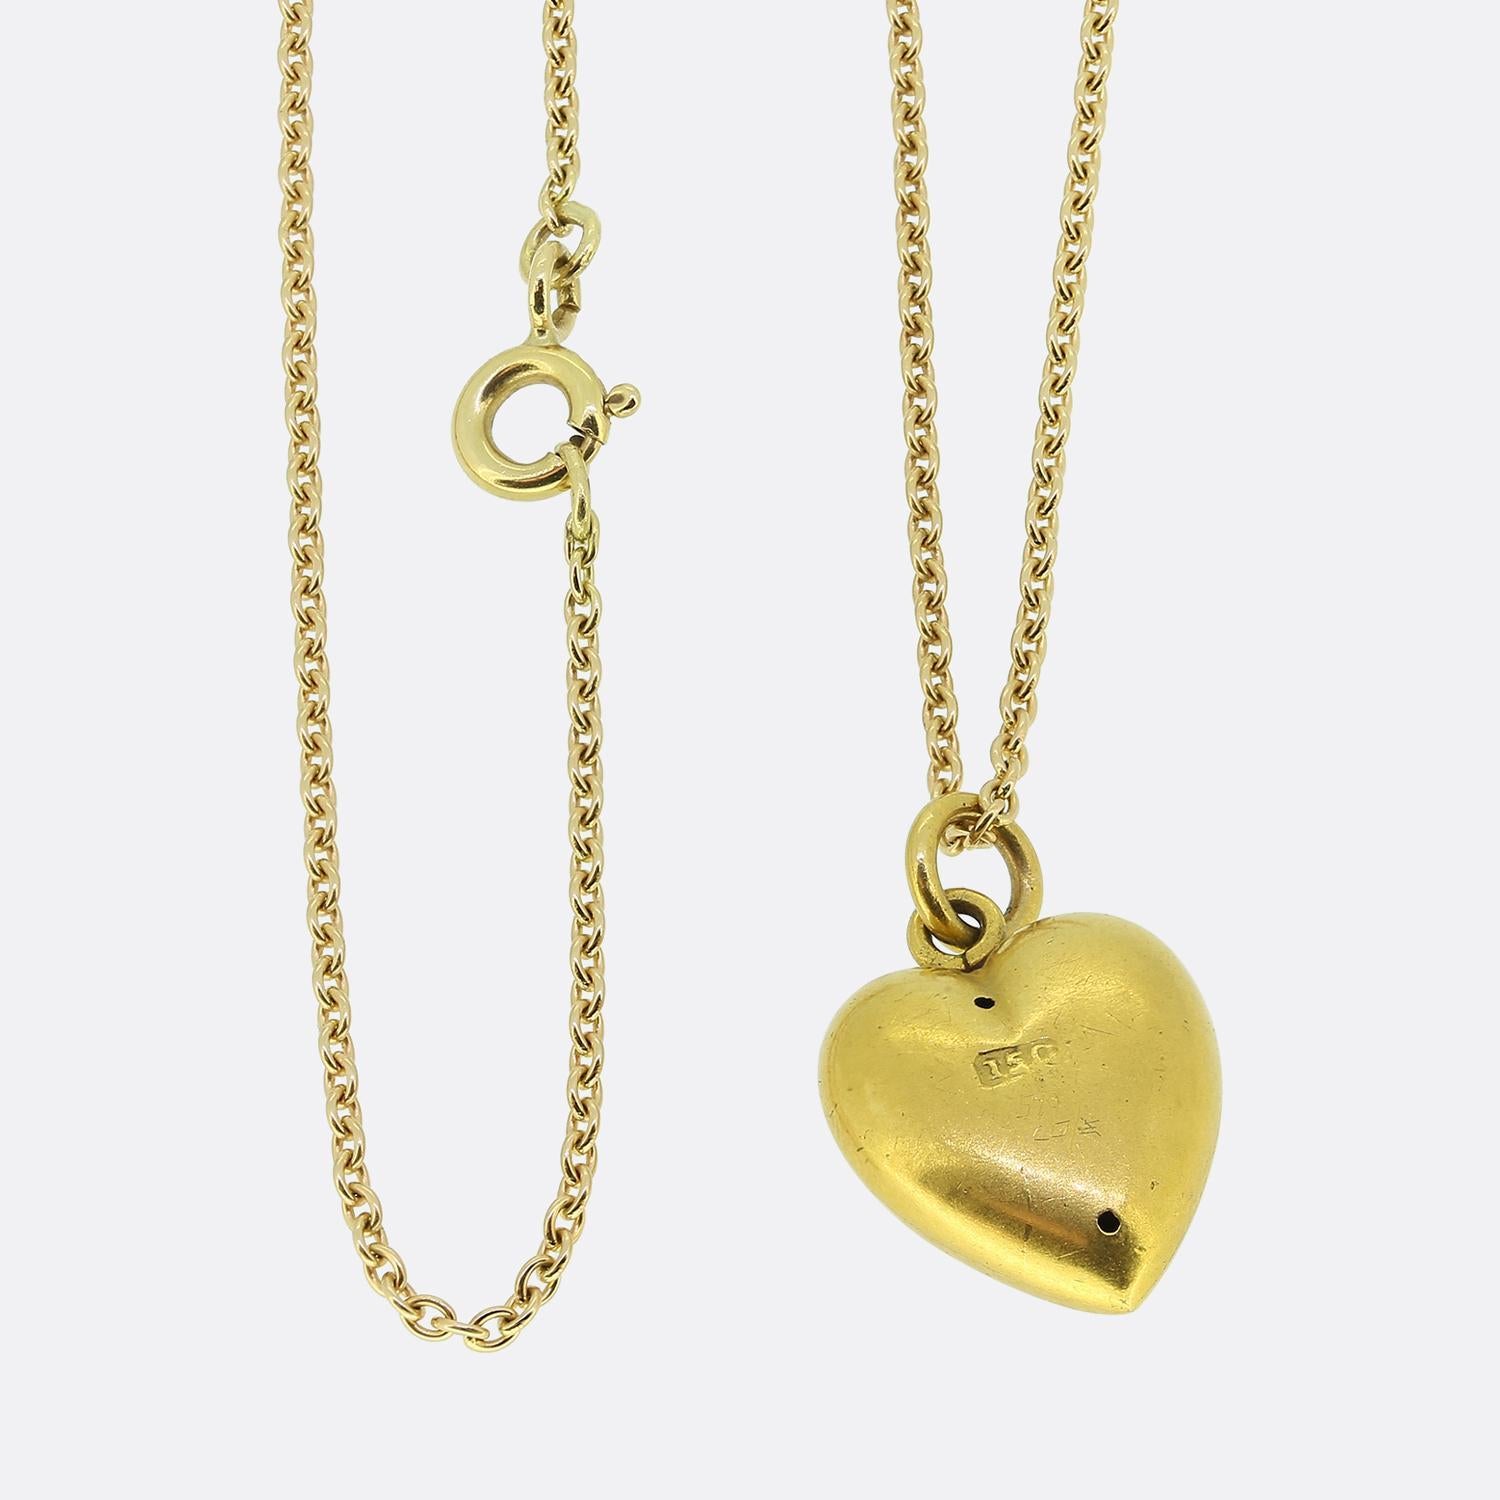 Nous avons ici un charmant collier à pendentifs en perles. Ce pendentif antique a été réalisé en or jaune 15ct en forme de petit cœur d'amour et serti d'une perle naturelle de forme ronde au centre. Cette pierre focale a été sertie dans une étoile